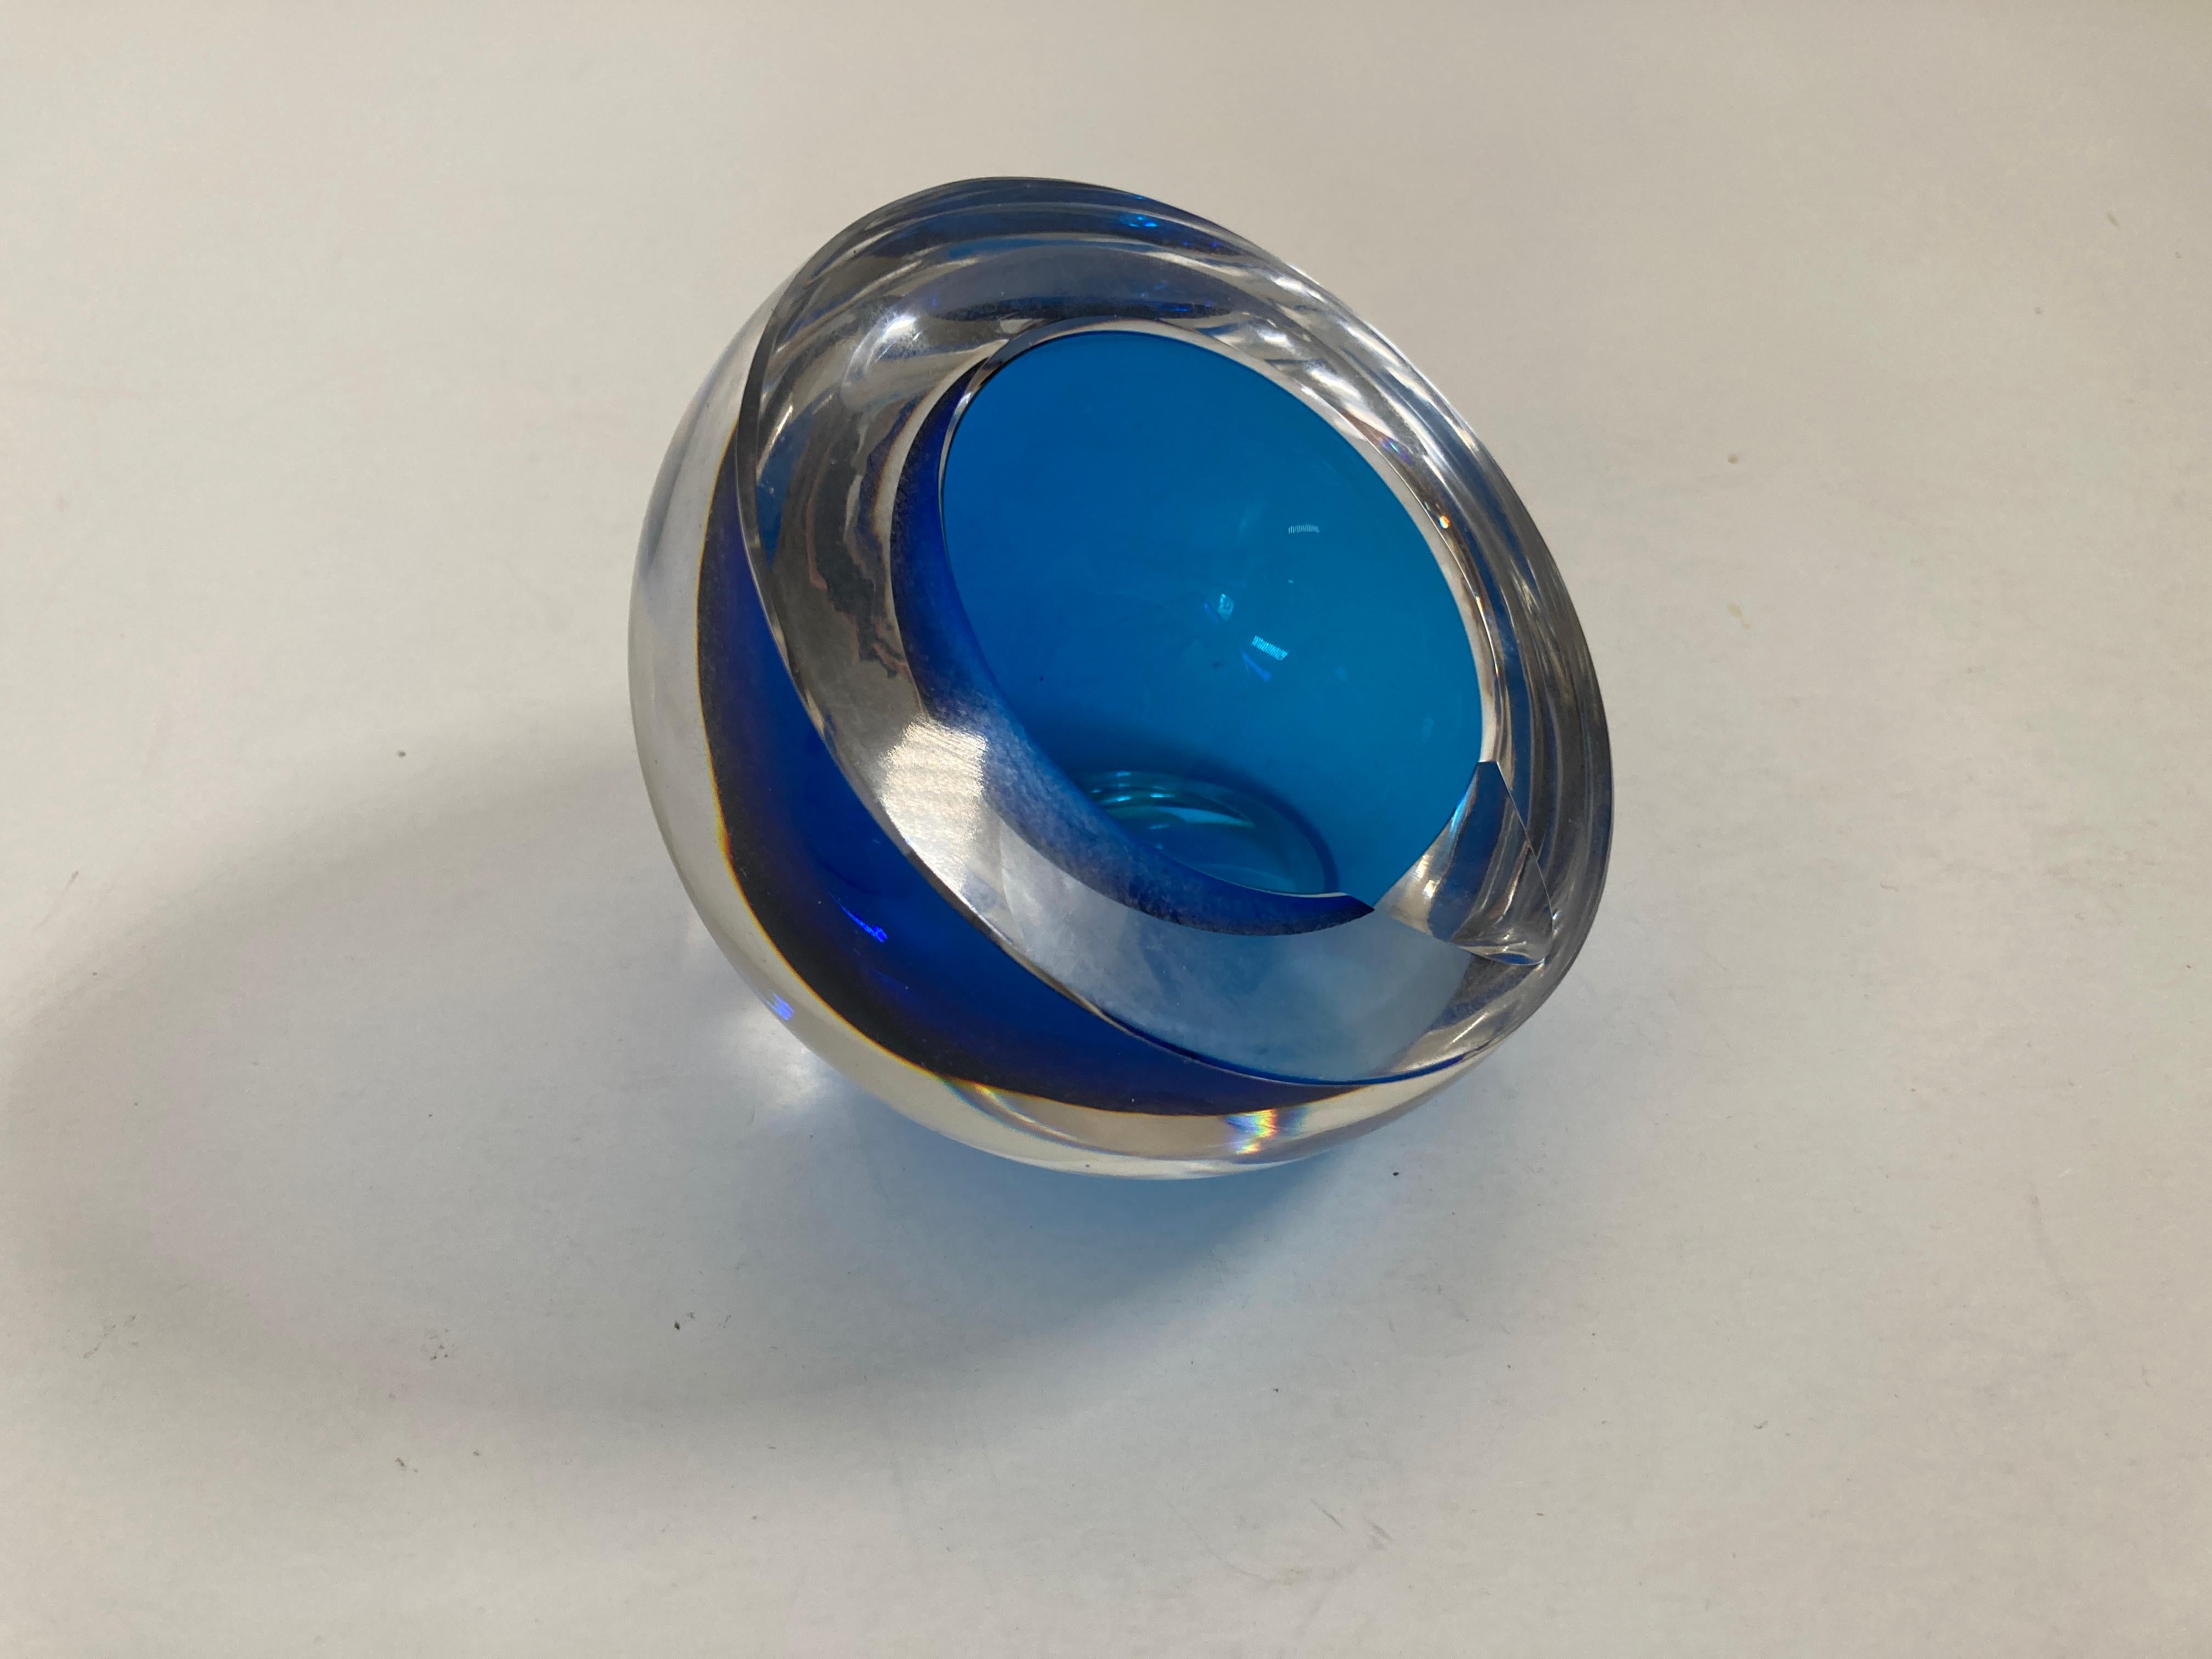 Magnifique bol ou cendrier en verre d'art soufflé à la main de Murano Vénitien. 
Cendrier en verre d'art italien Murano Sommerso orb bleu et transparent
Il est extrêmement difficile de trouver un cendrier en verre lourd dans un superbe design